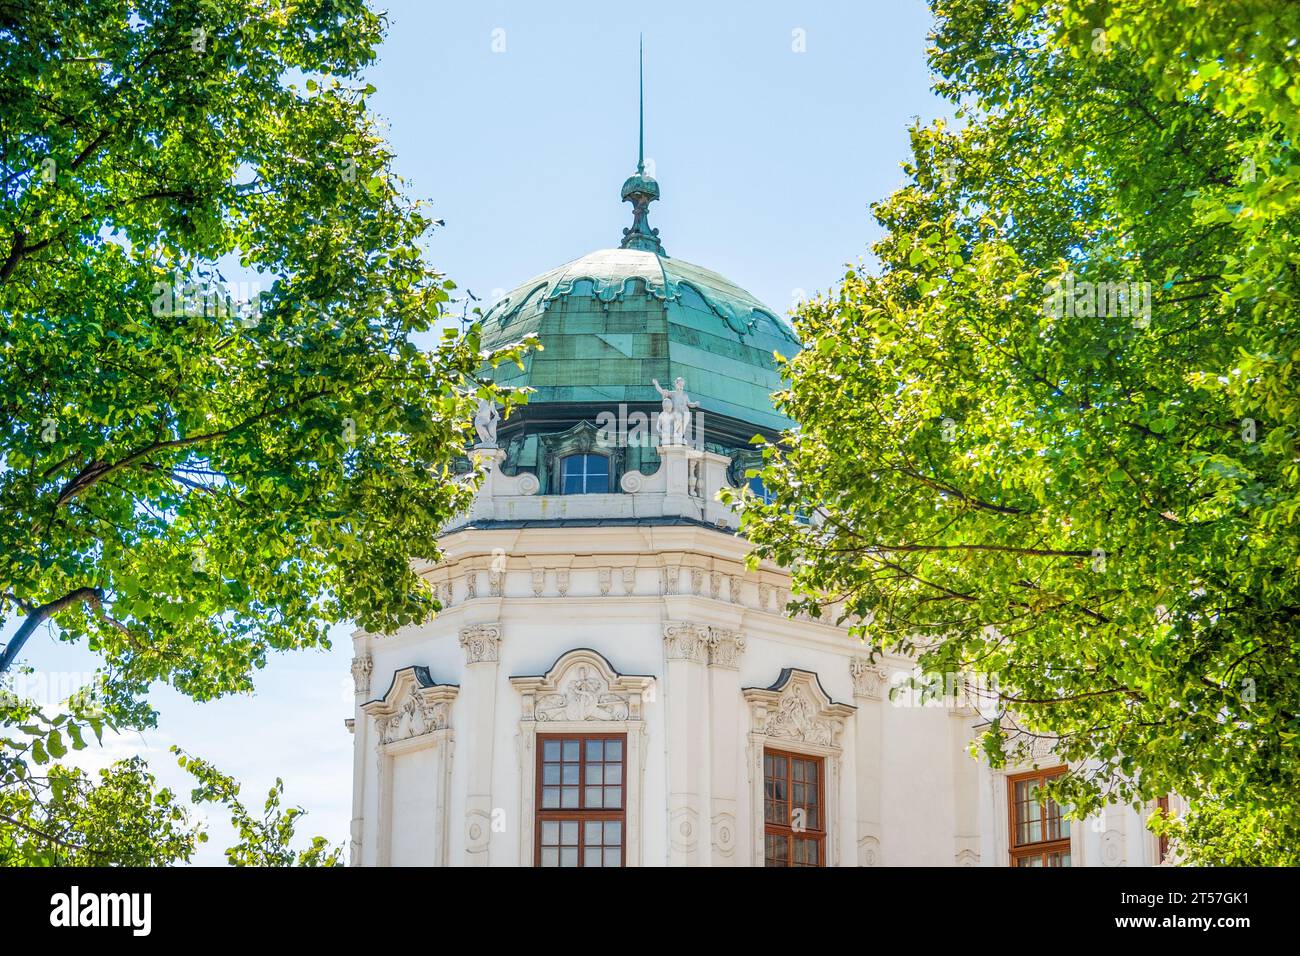 Ein detaillierter Blick auf das Schlossgebäude des Oberen Belvedere, Wien, Österreich Stockfoto